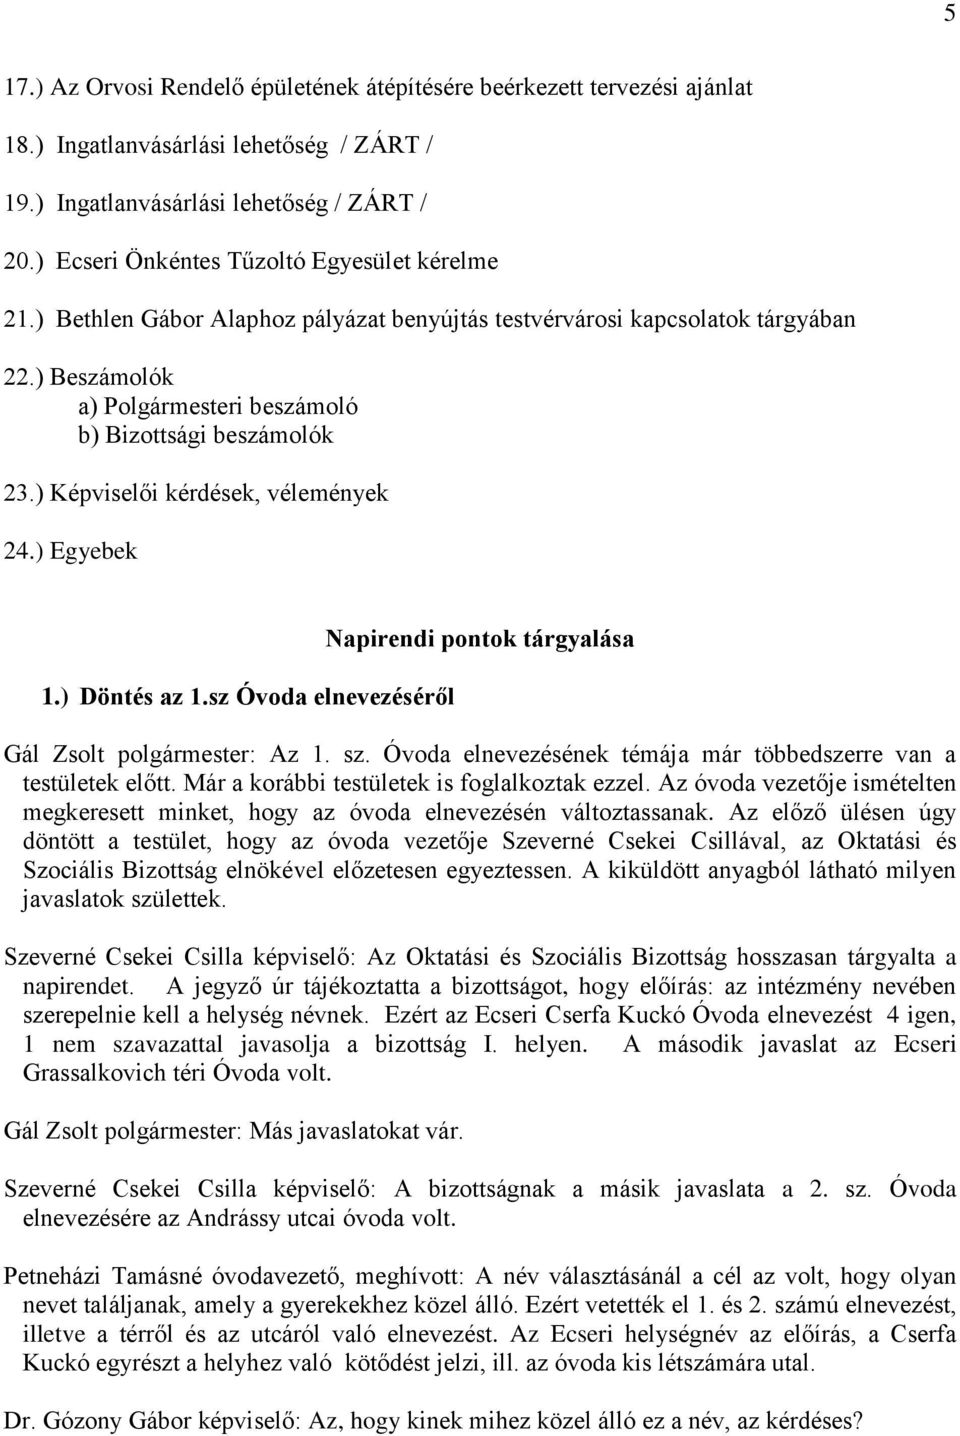 ) Képviselői kérdések, vélemények 24.) Egyebek 1.) Döntés az 1.sz Óvoda elnevezéséről Napirendi pontok tárgyalása Gál Zsolt polgármester: Az 1. sz.